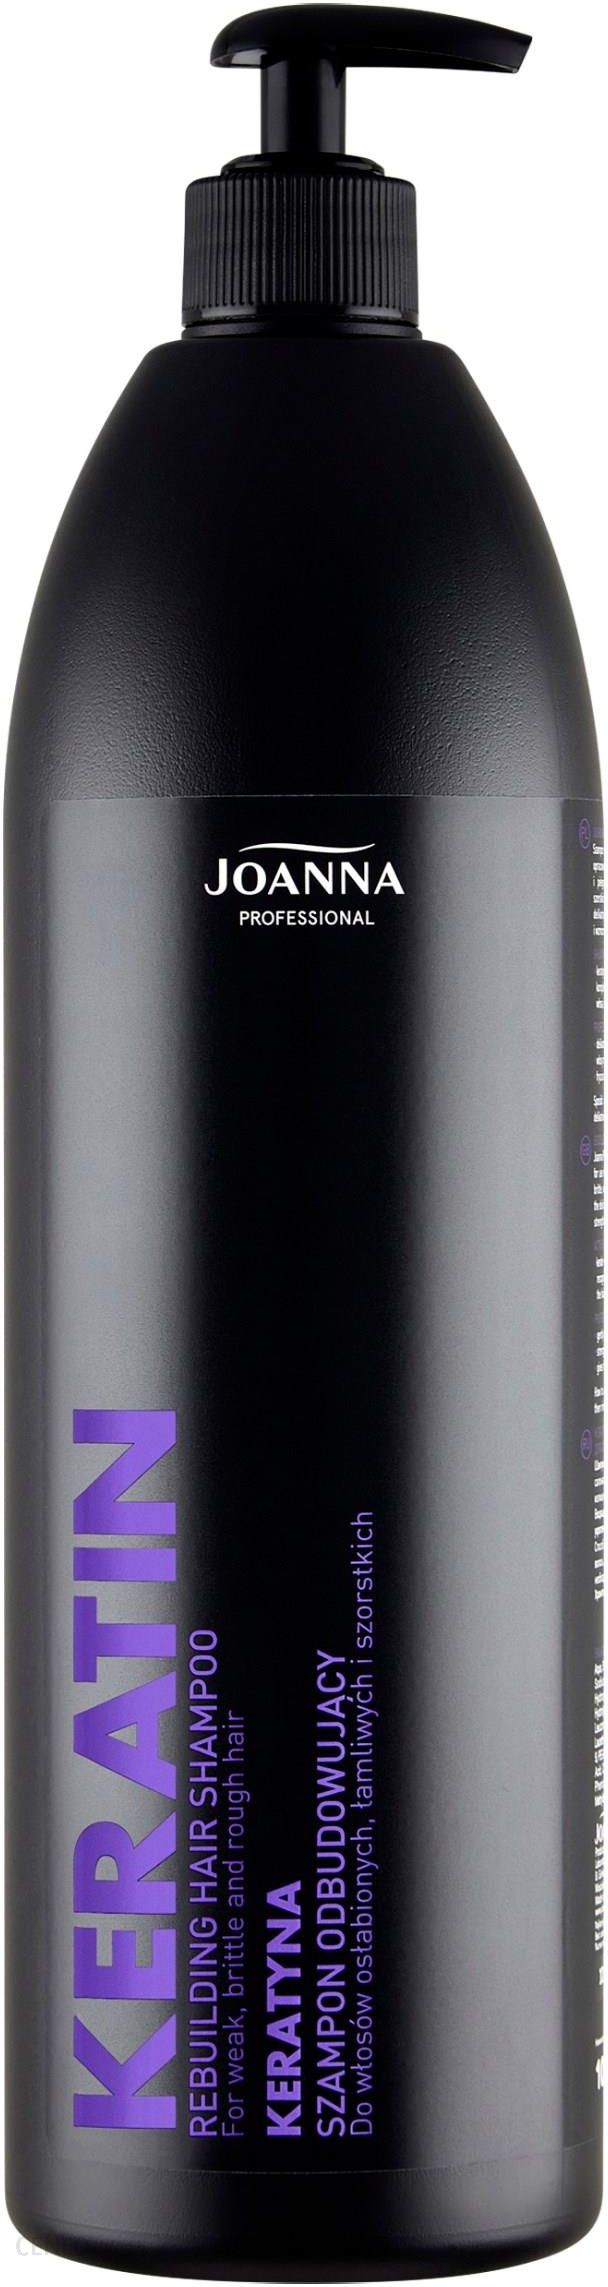 joanna szampon z probiotykami